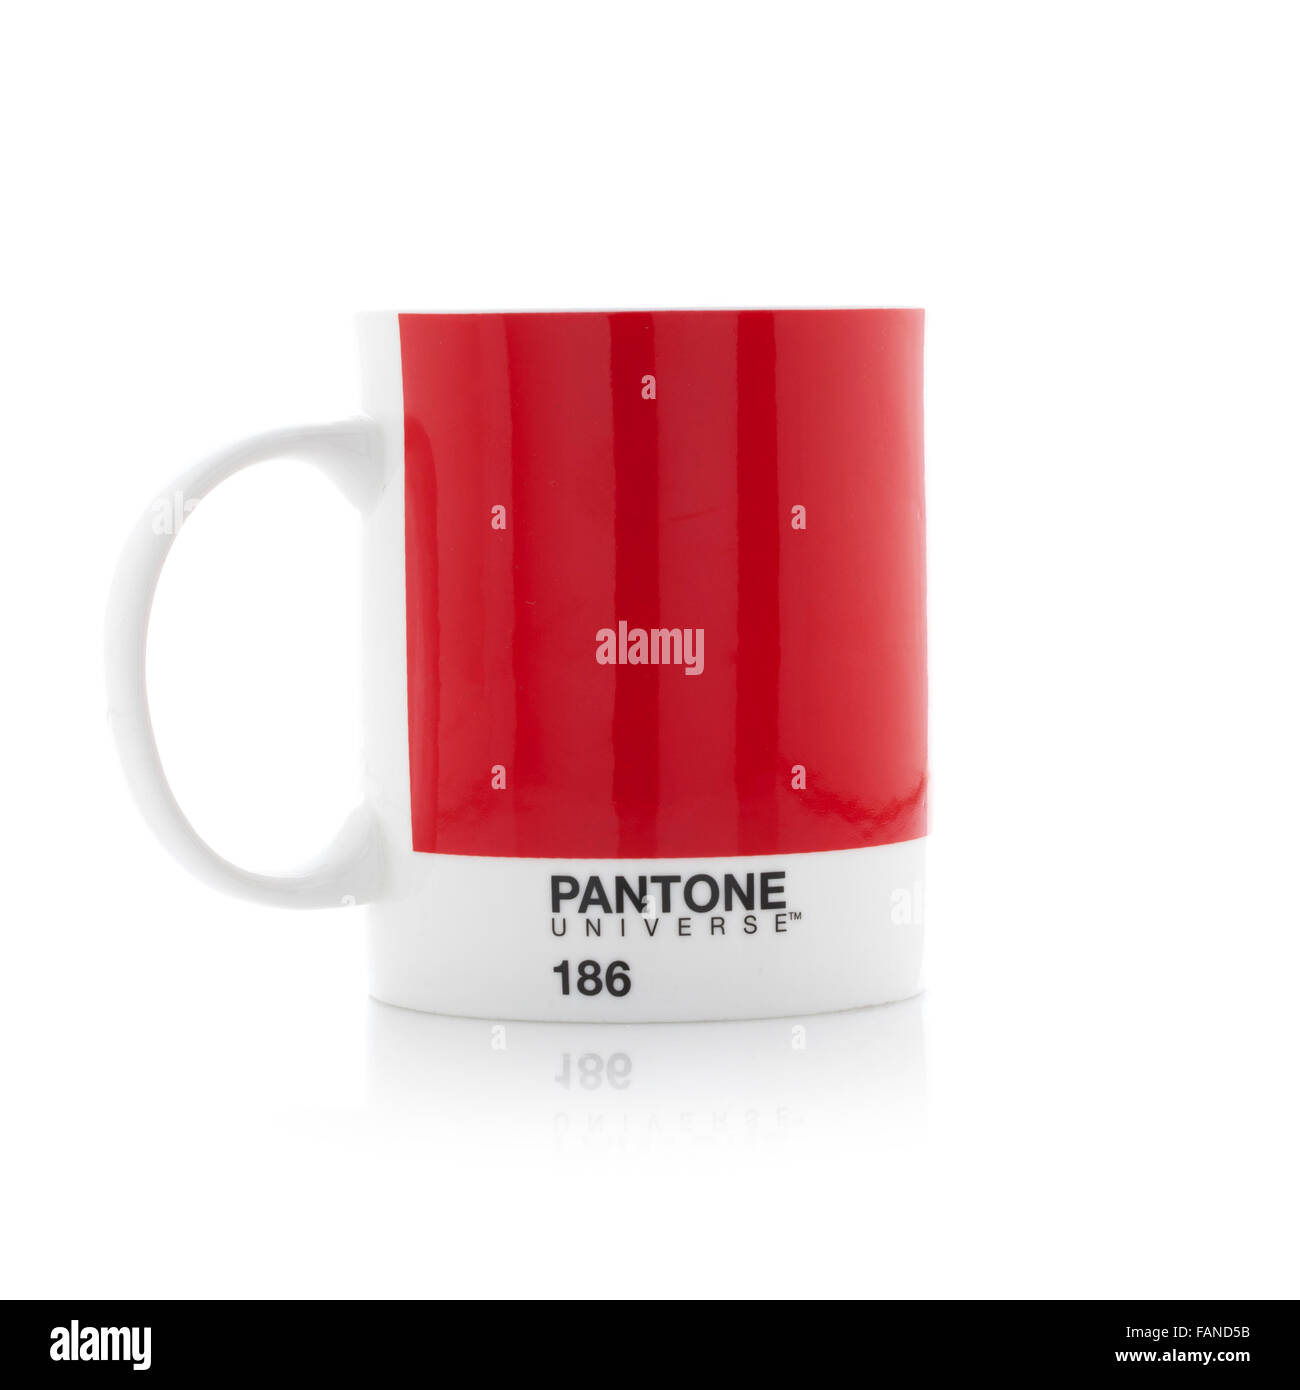 Pantone Universe 186 Mug on a white background Stock Photo